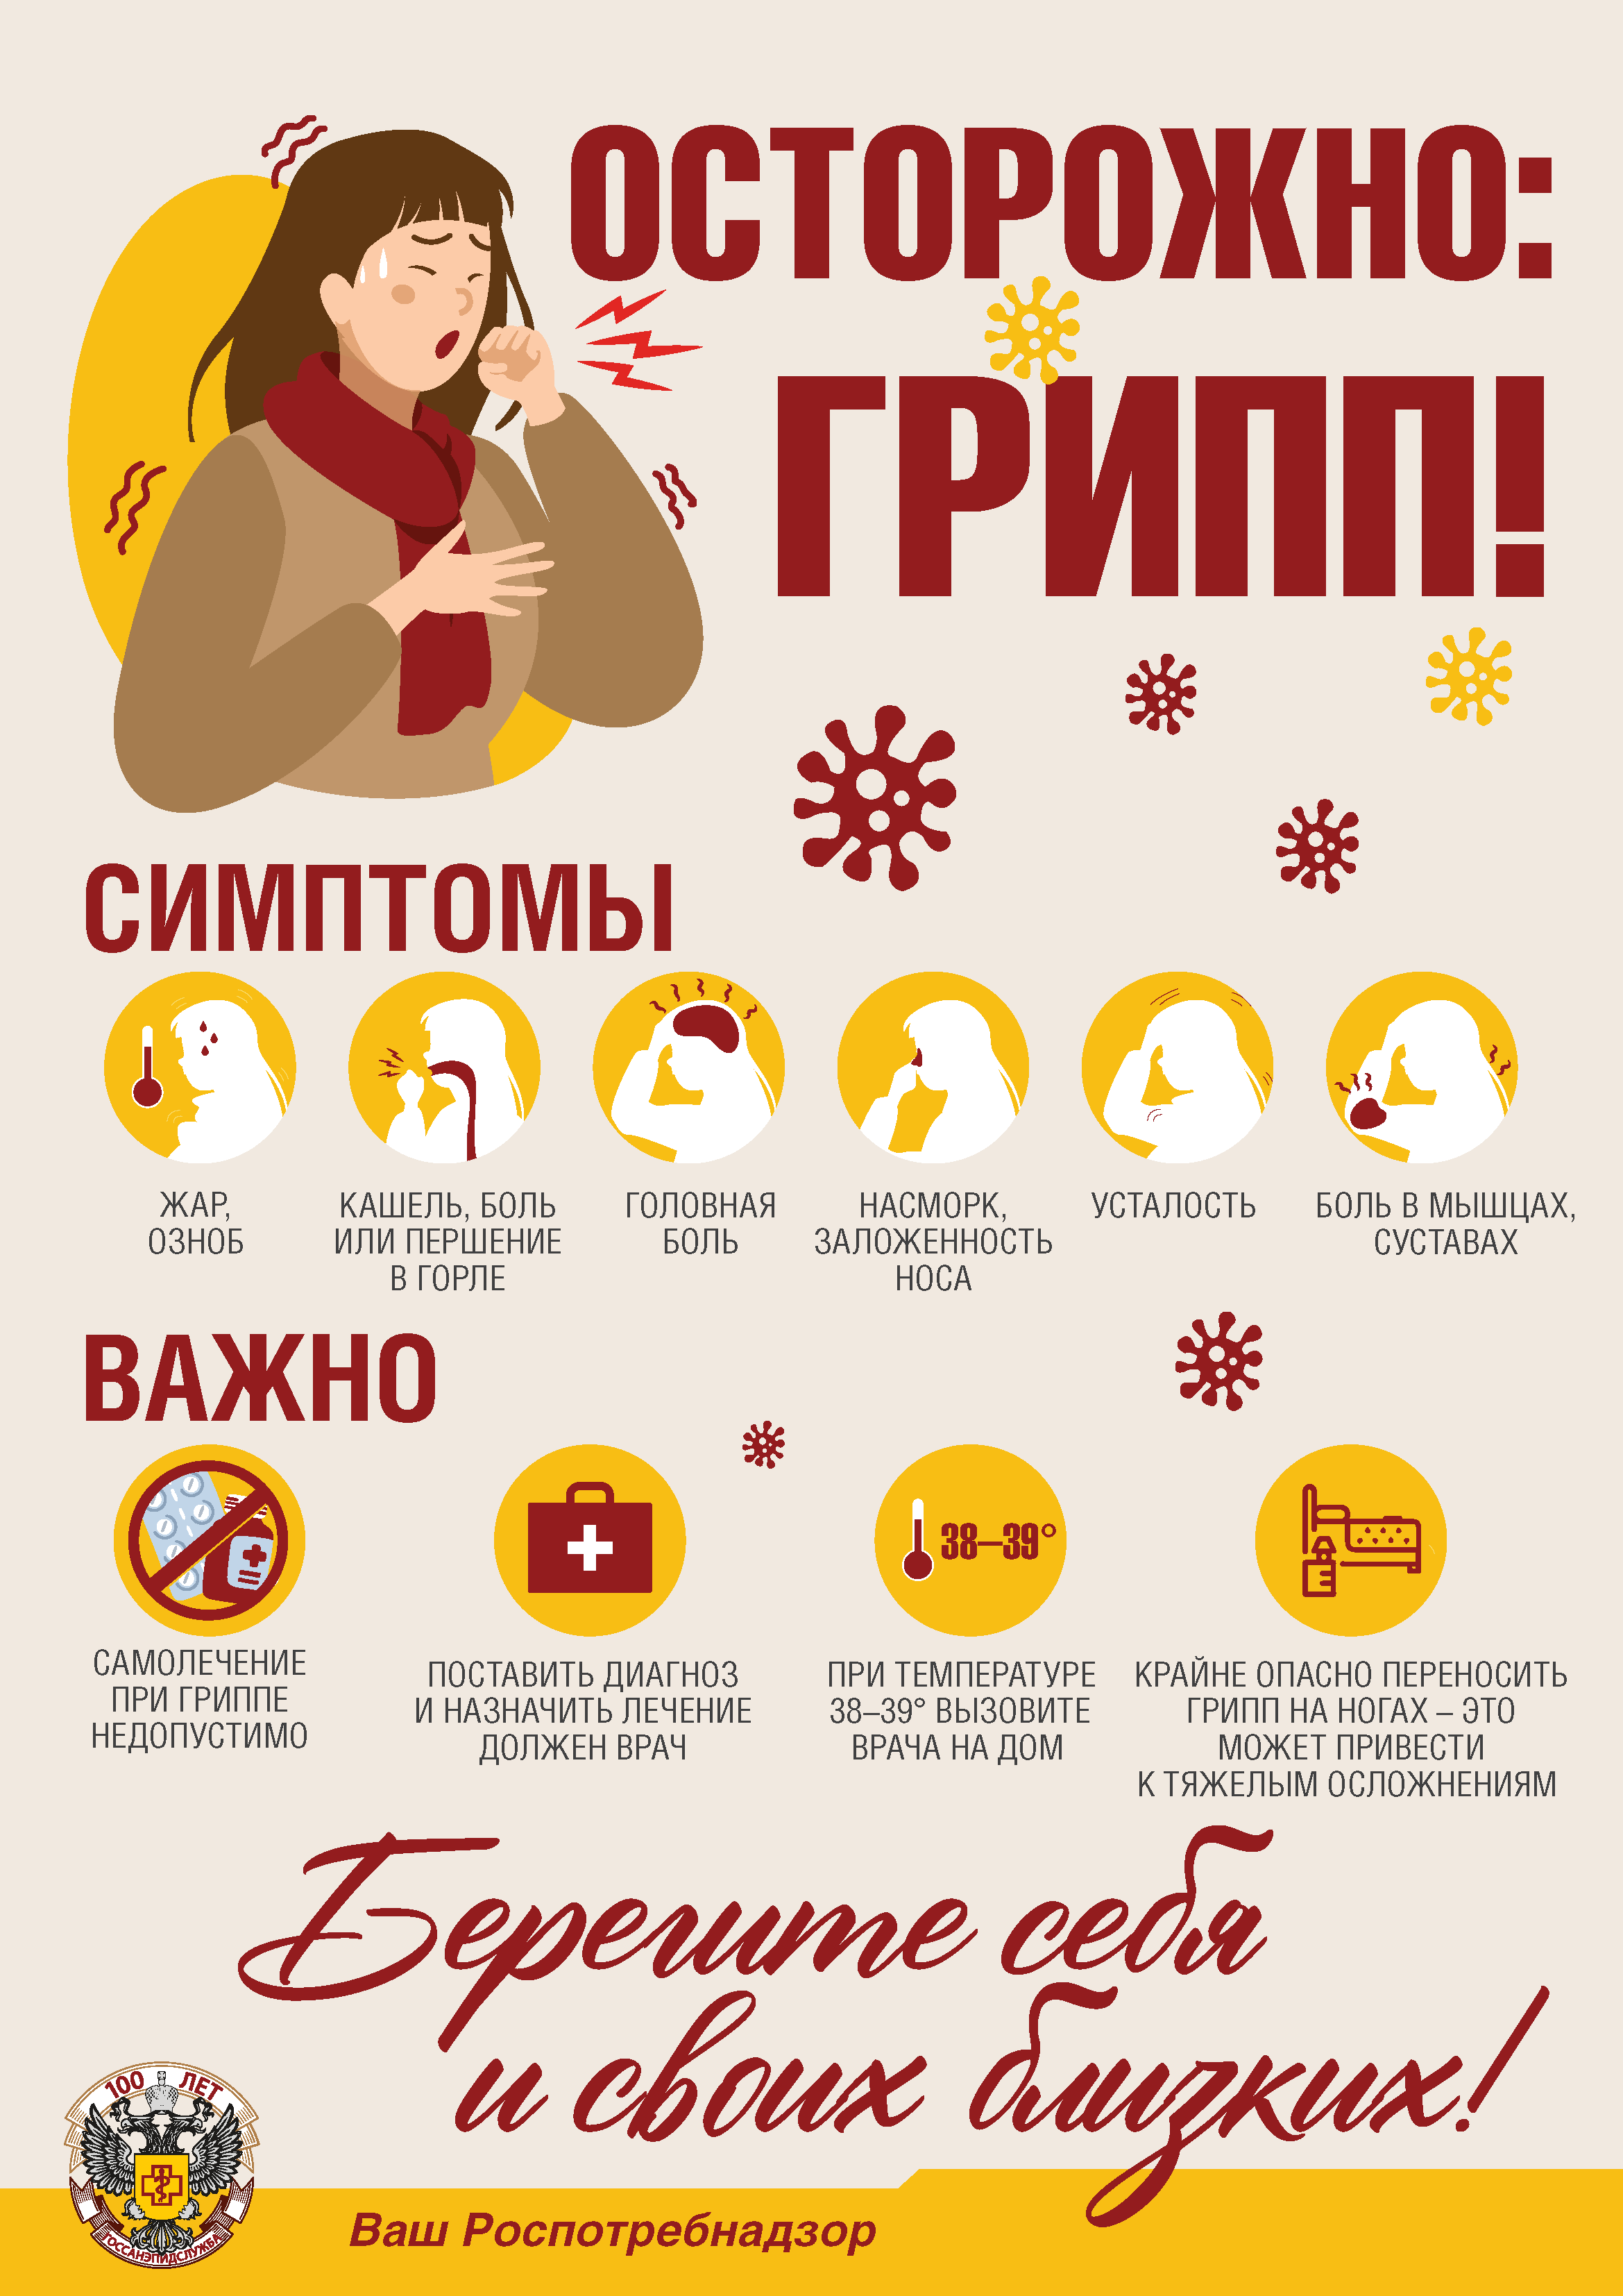 Профессии, связанные с русским языком и литературой и обществознанием